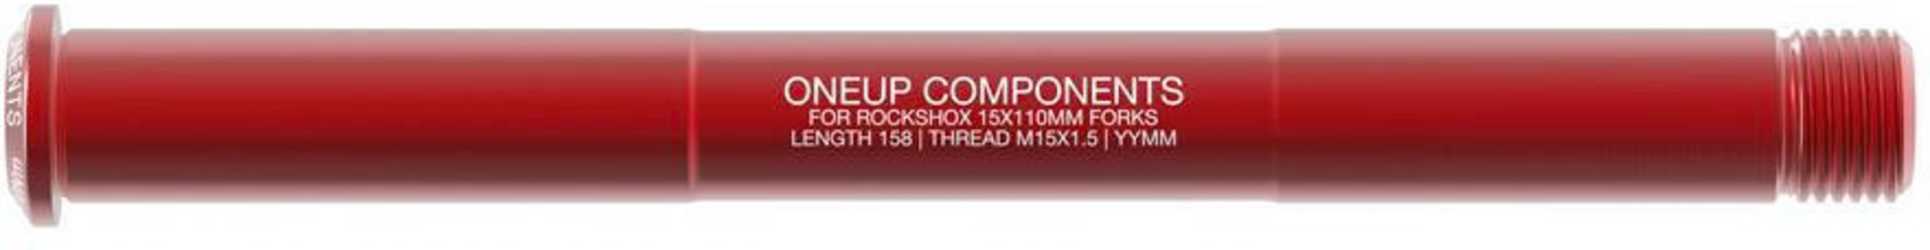 Stickaxel OneUp Rock Shox 15 x 110 mm Boost fram röd från OneUp